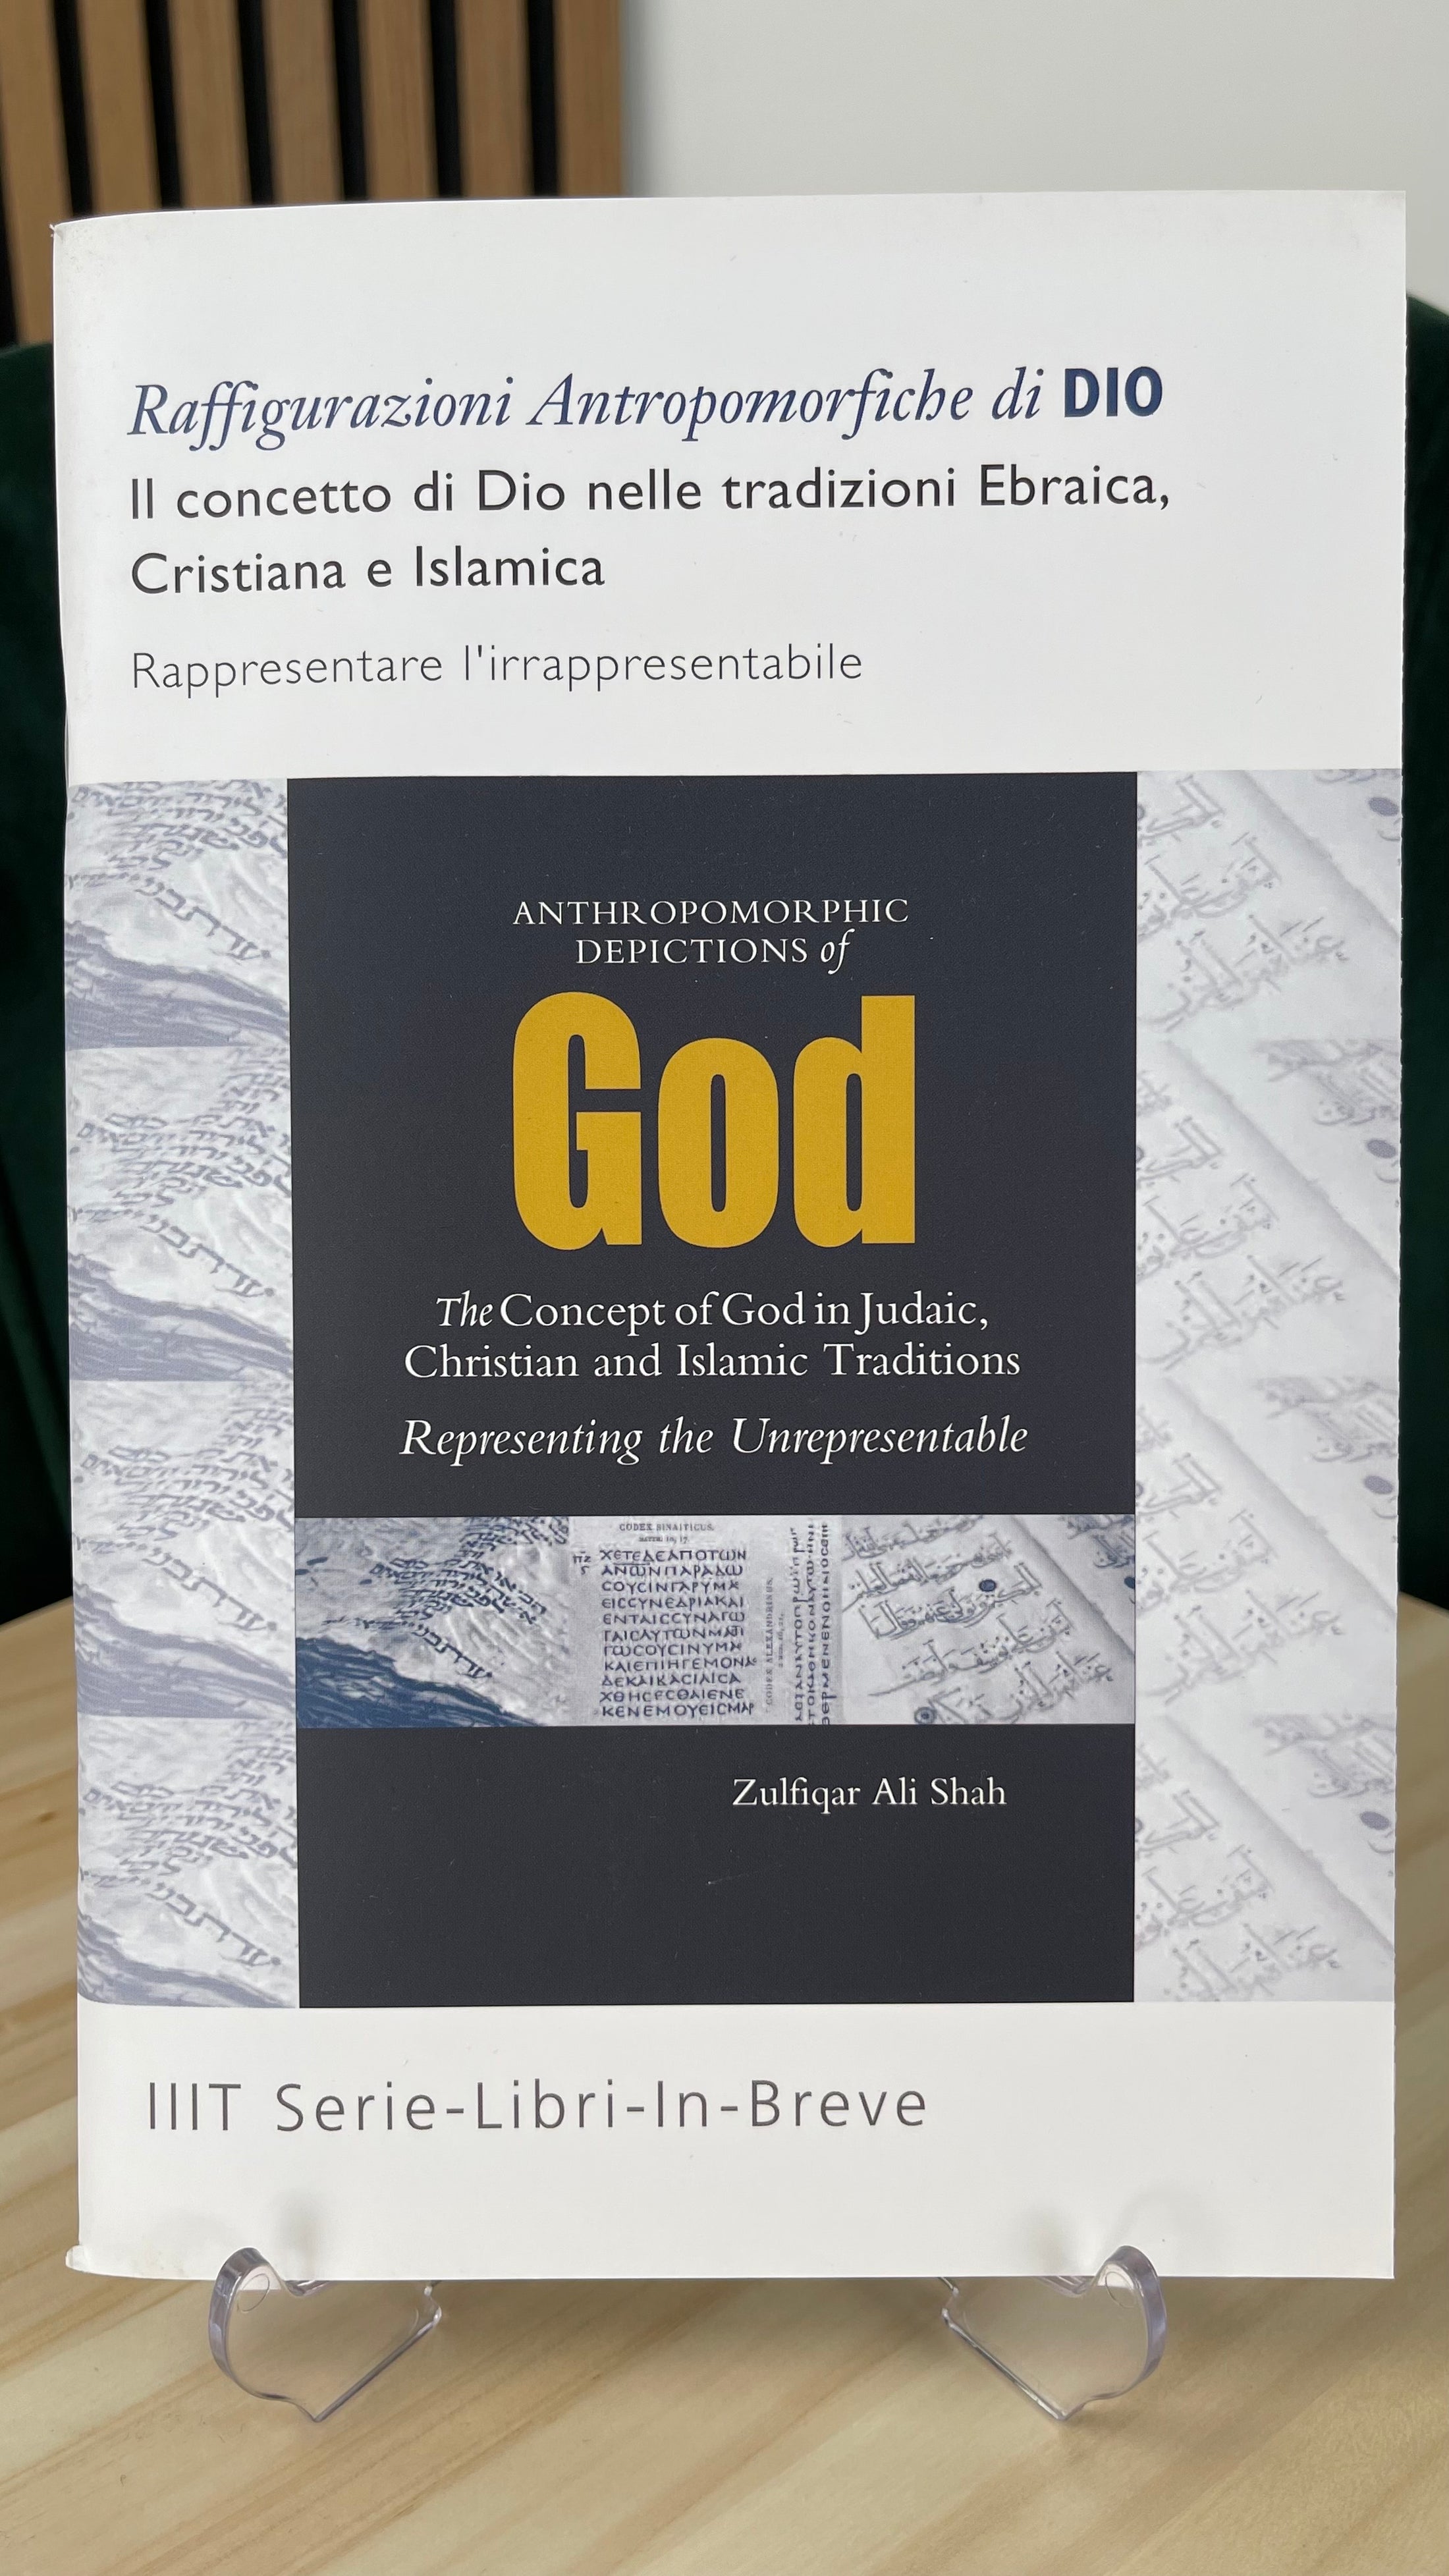 Il concetto di Dio nelle tradizioni Ebraica, Cristiana e Islamica - Hijab Paradise - Libreria Islamica- raffigurazioni antropomorfiche di dio - rappresentare l'irrappresentabile